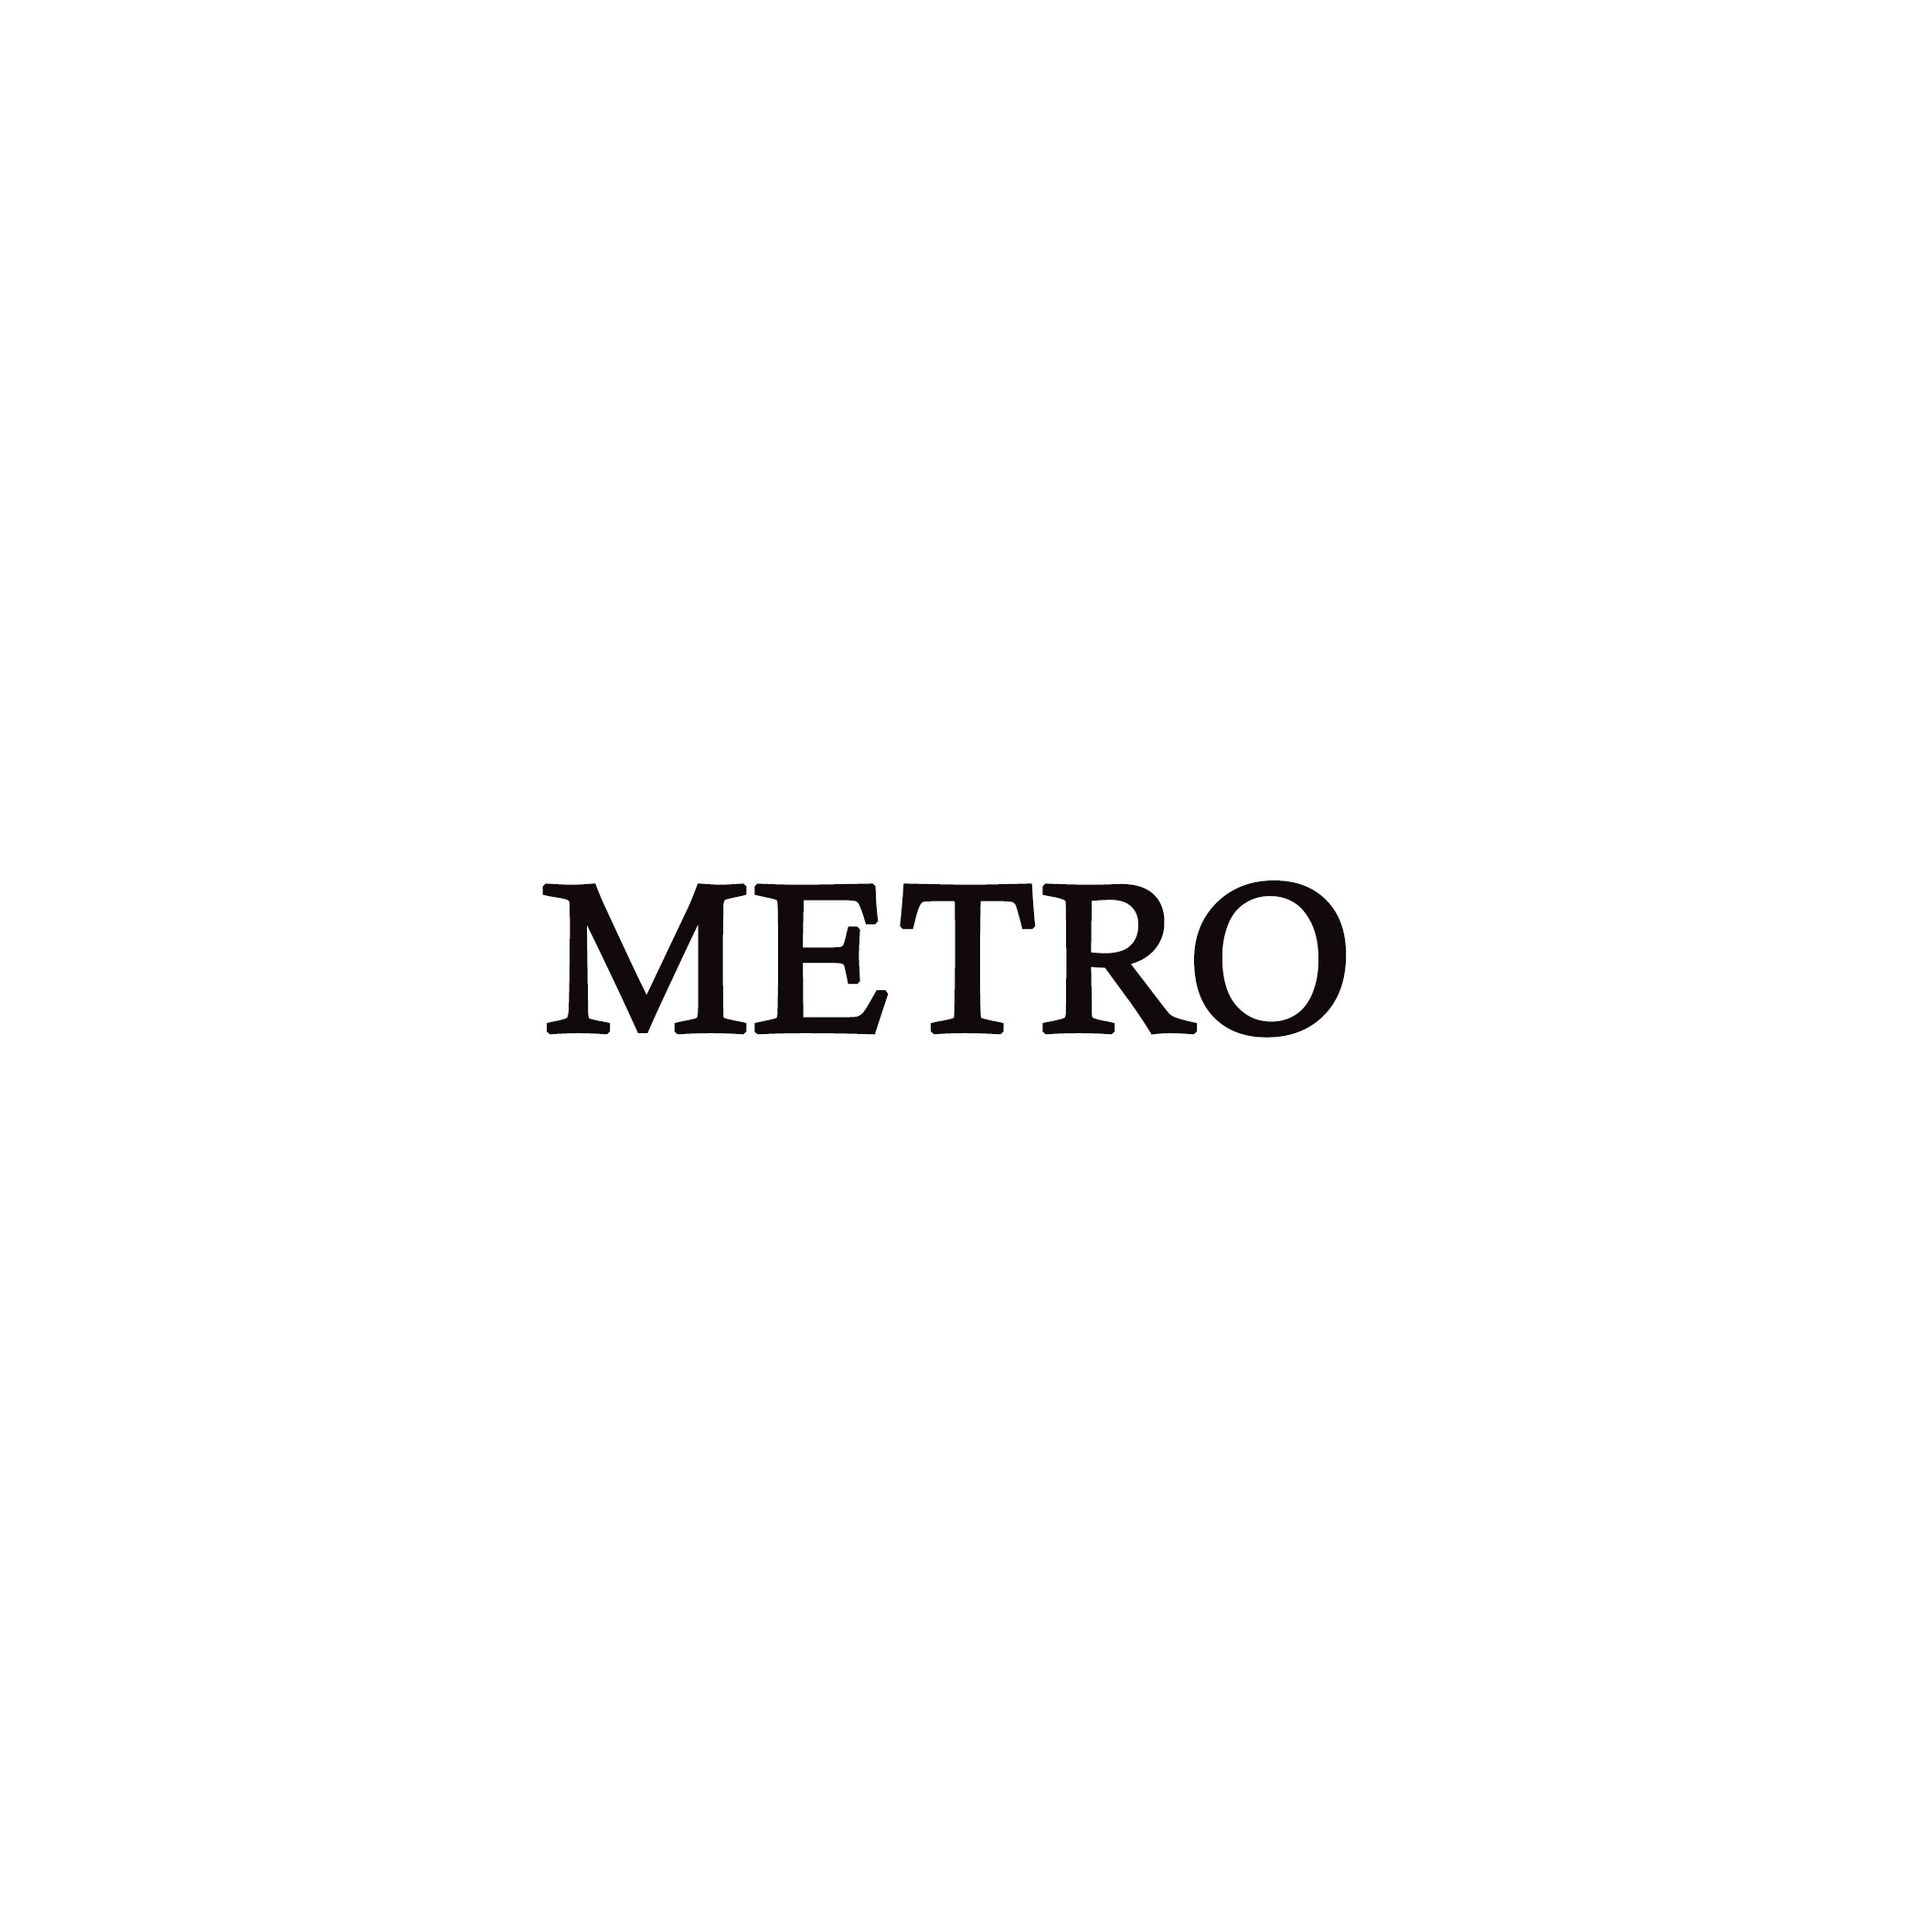 Product Brand: METRO